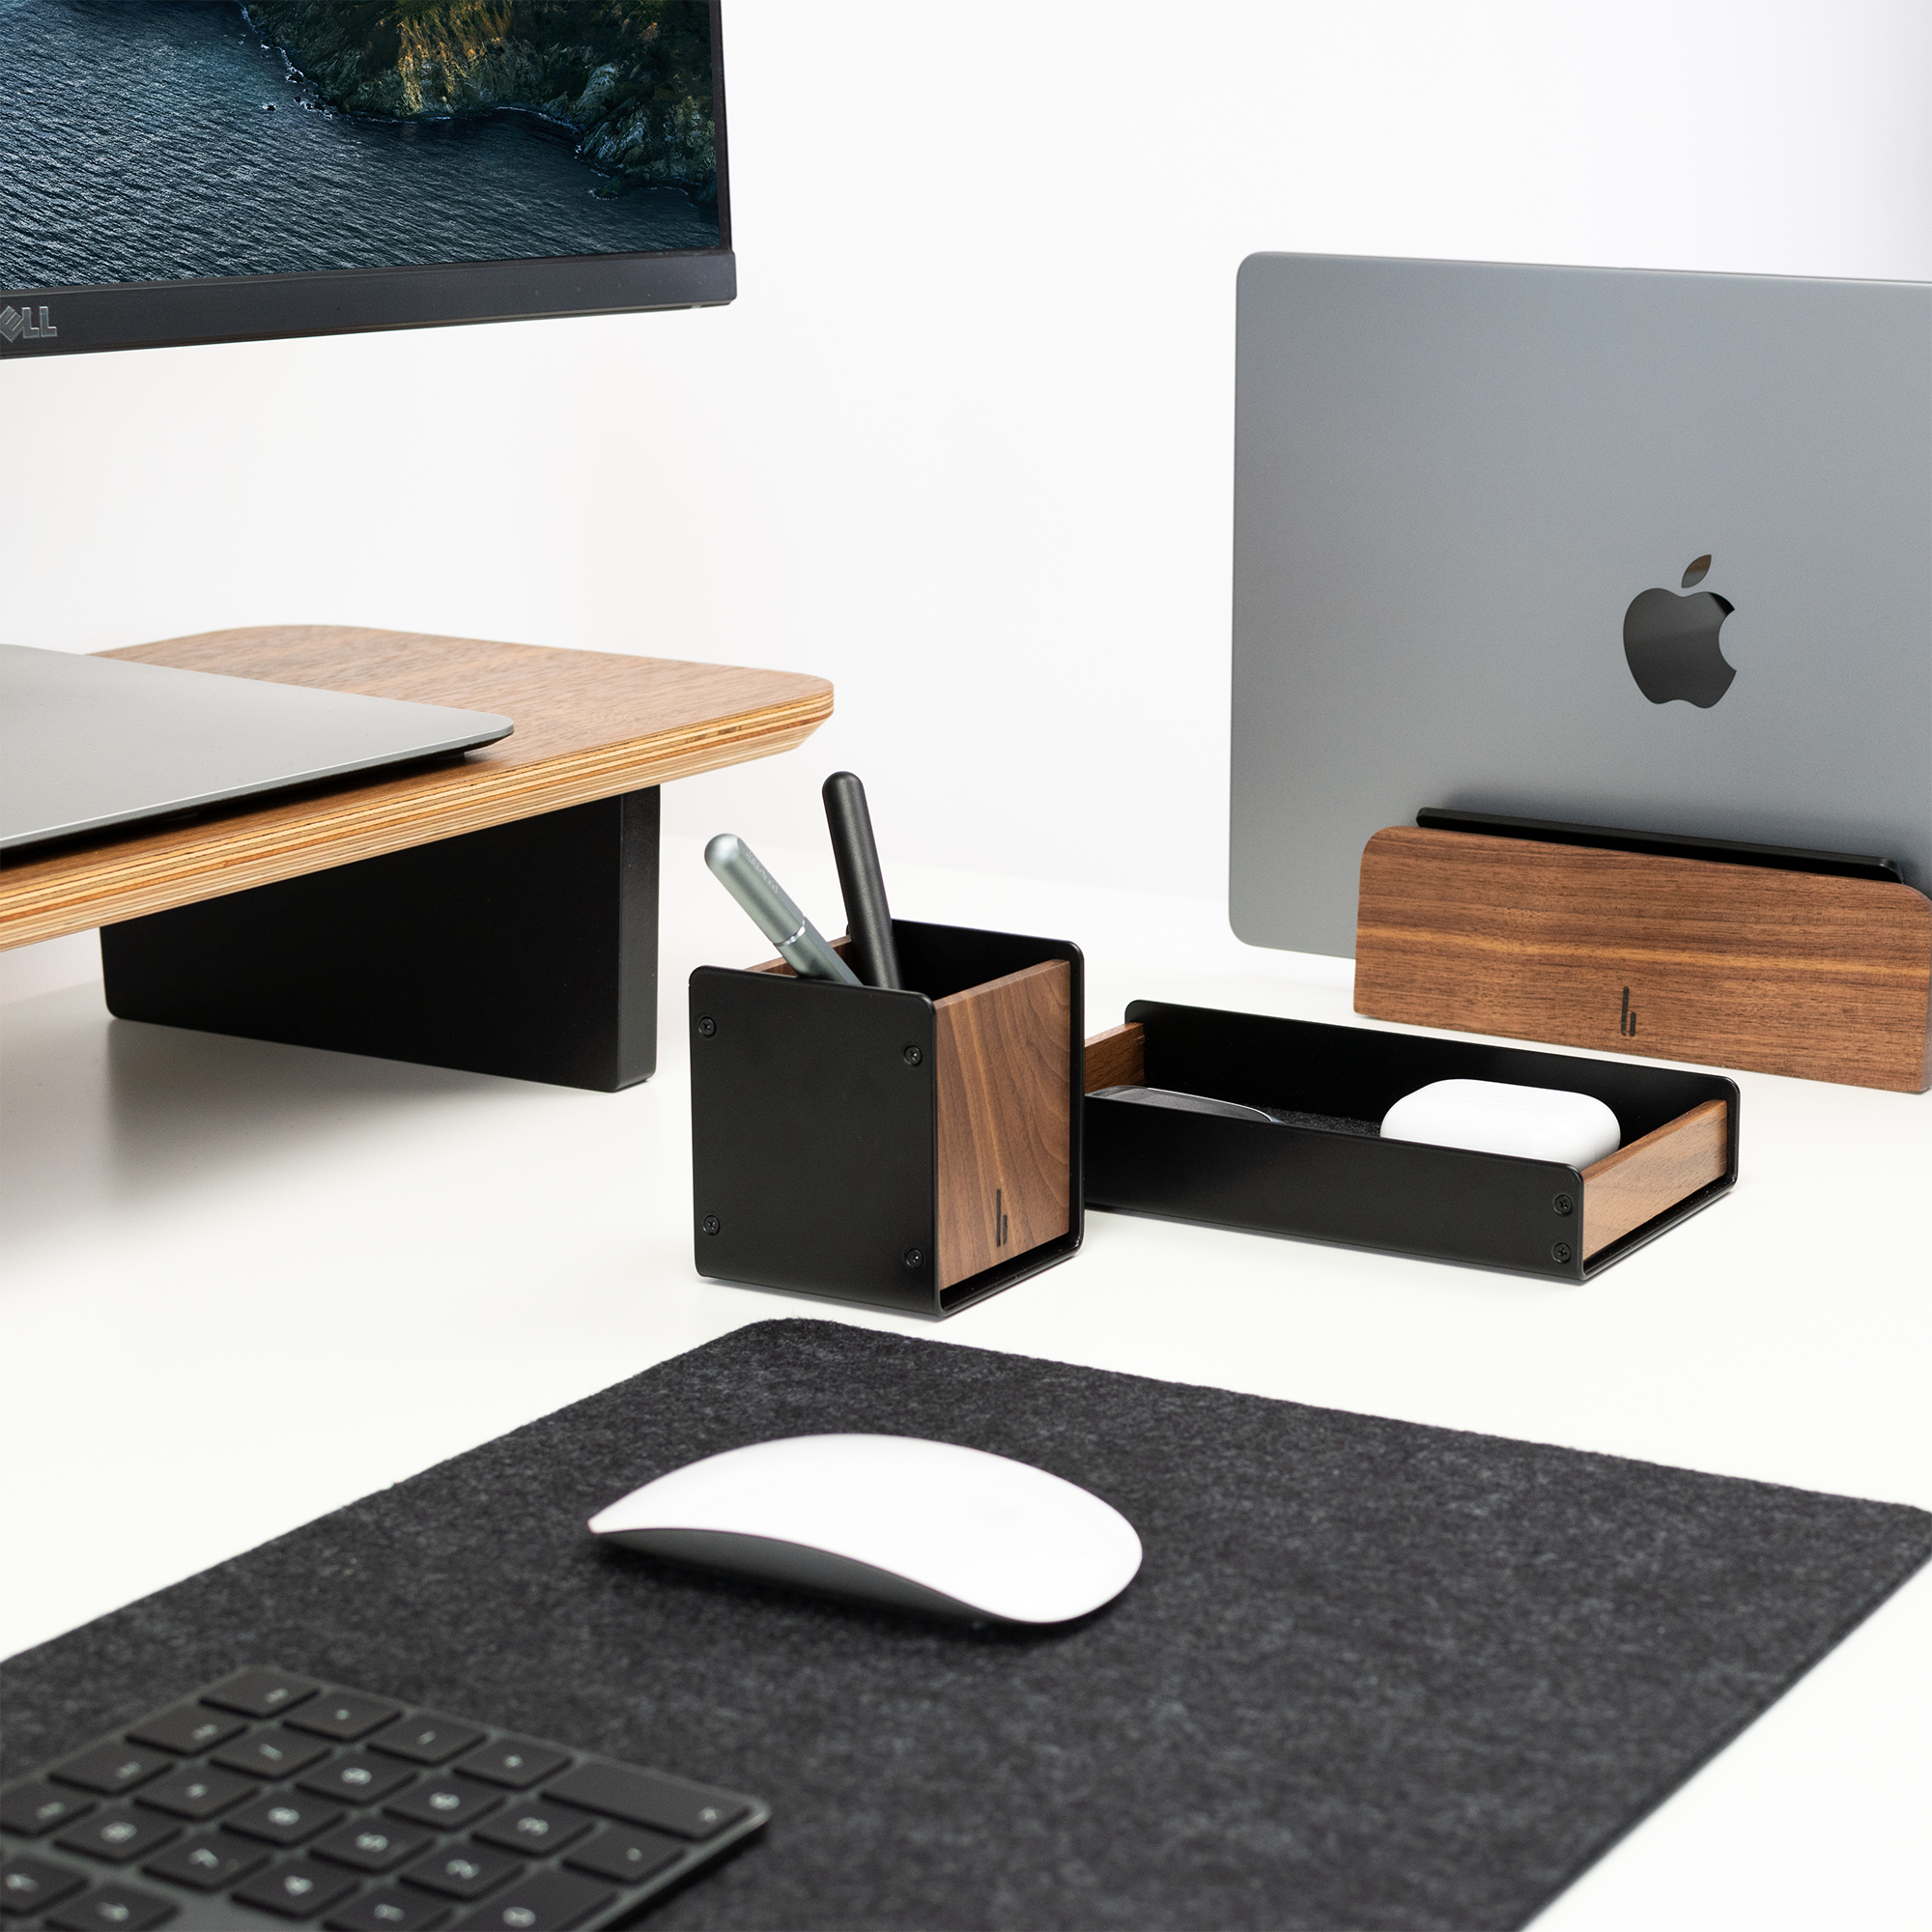 Schreibtisch mit Deskpad, Monitorerhöhung aus Holz, Stiftehalter, Desk Catchall Tray und Laptophalter von balolo